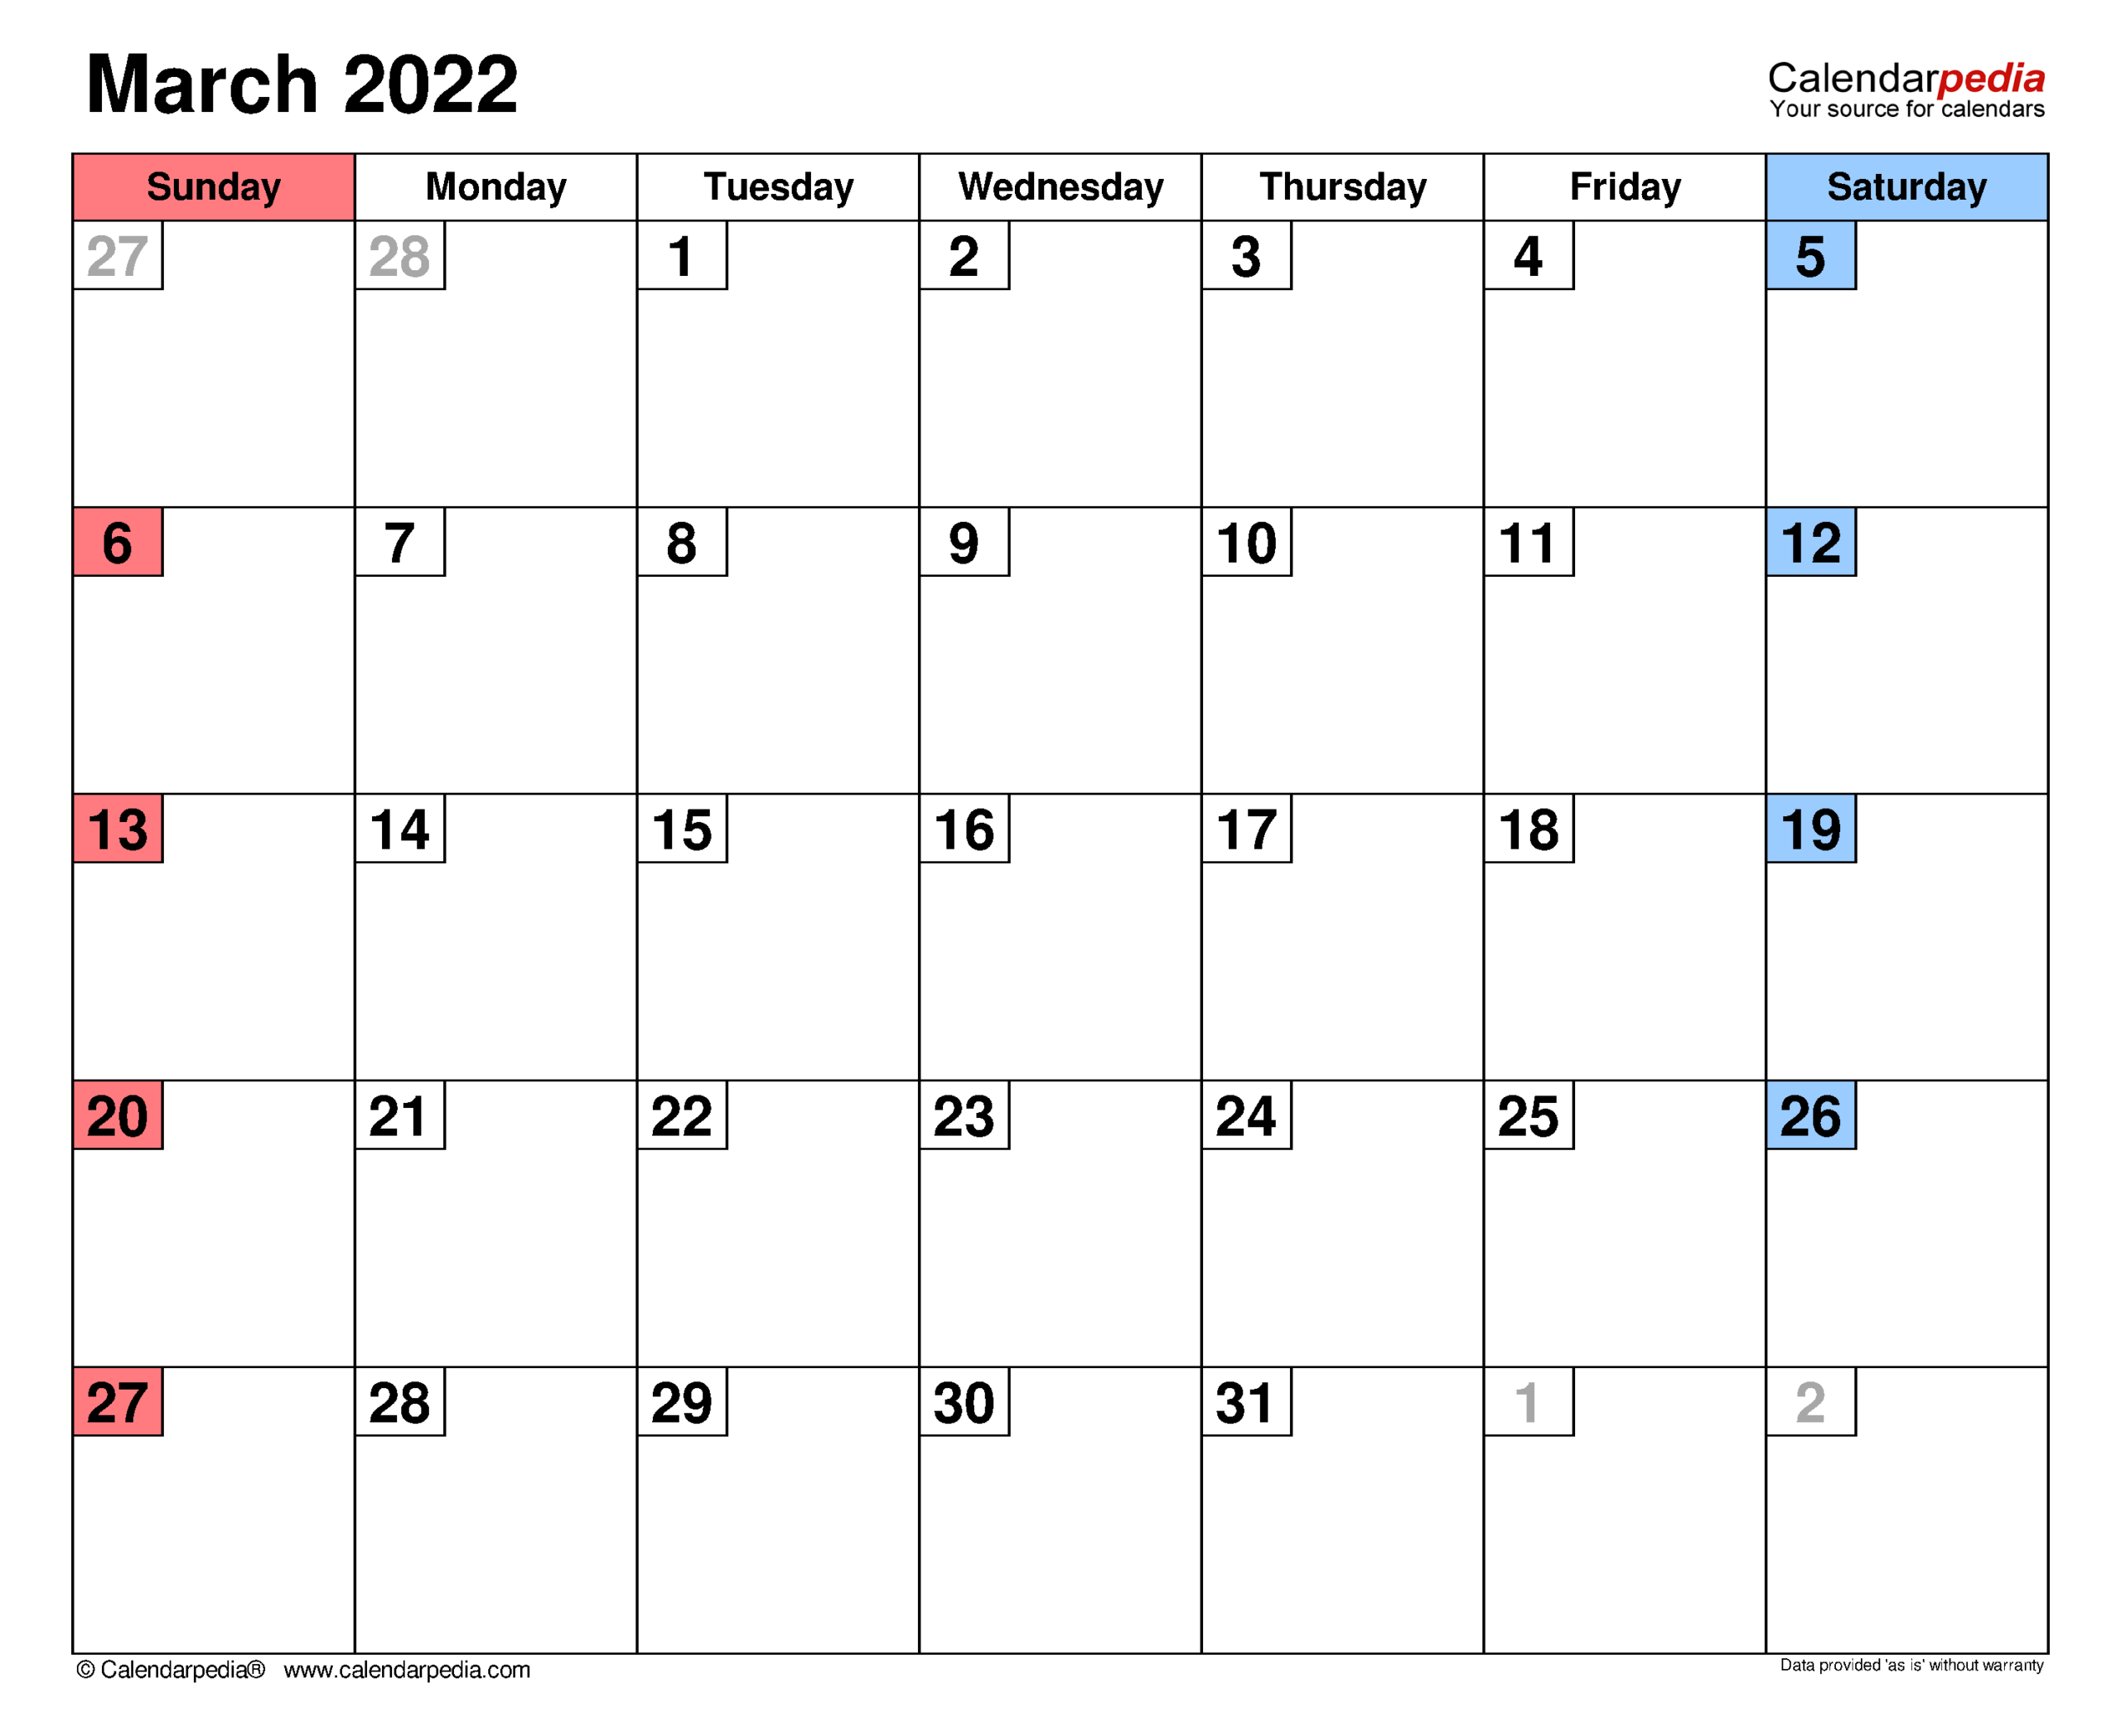 Catch March 2022 Calendar In Kannada